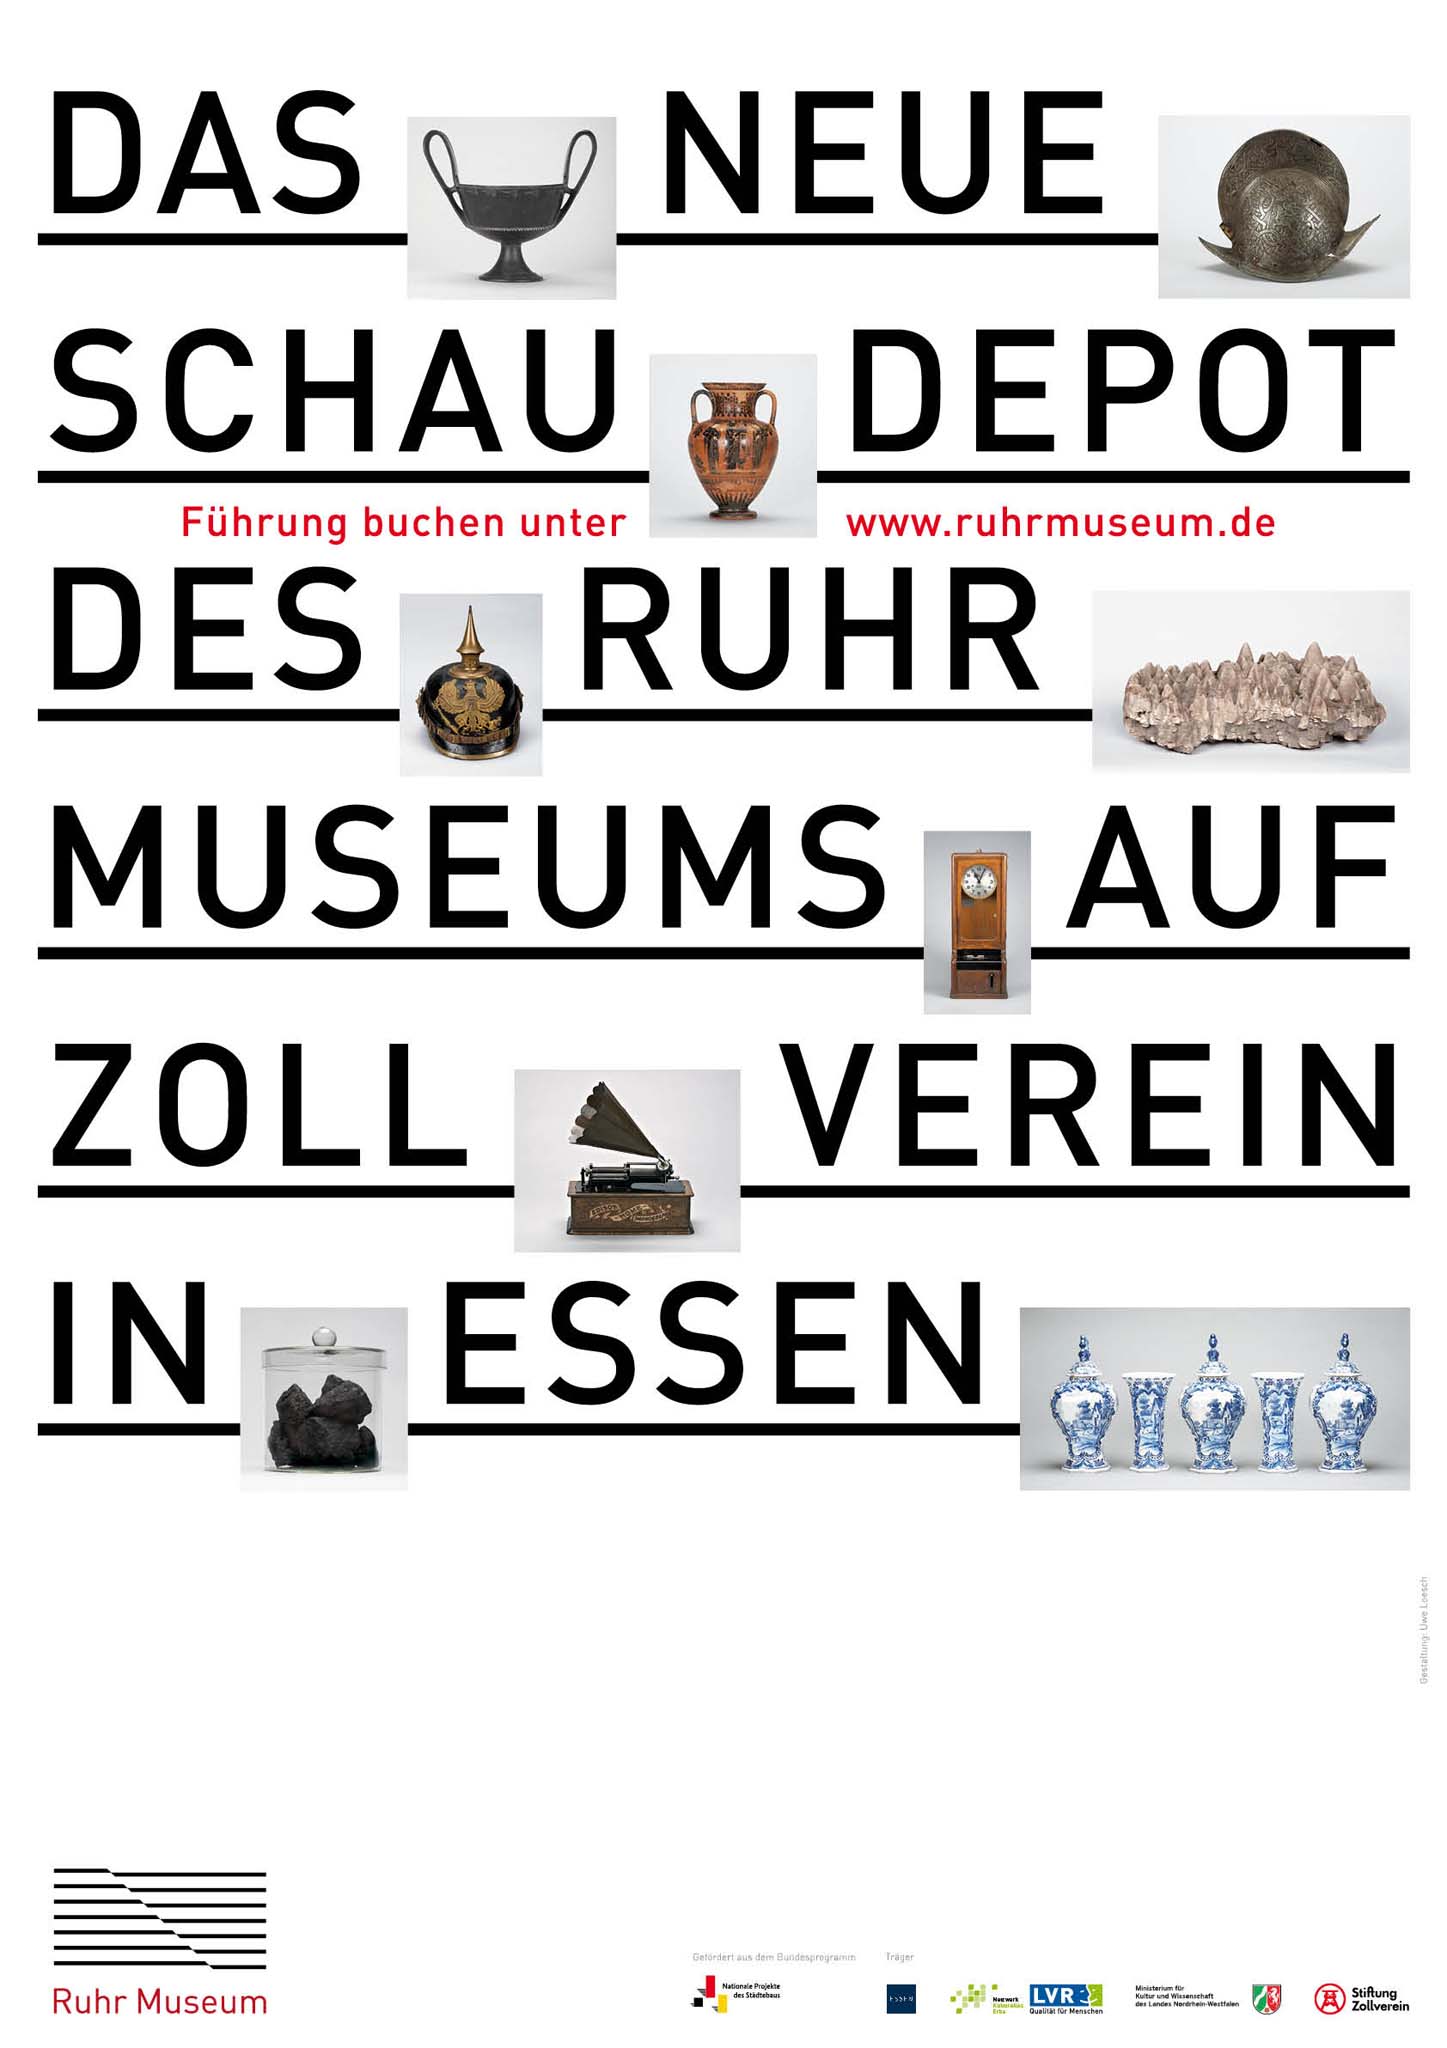 Offene Führung durch das Schaudepot des Ruhr Museums